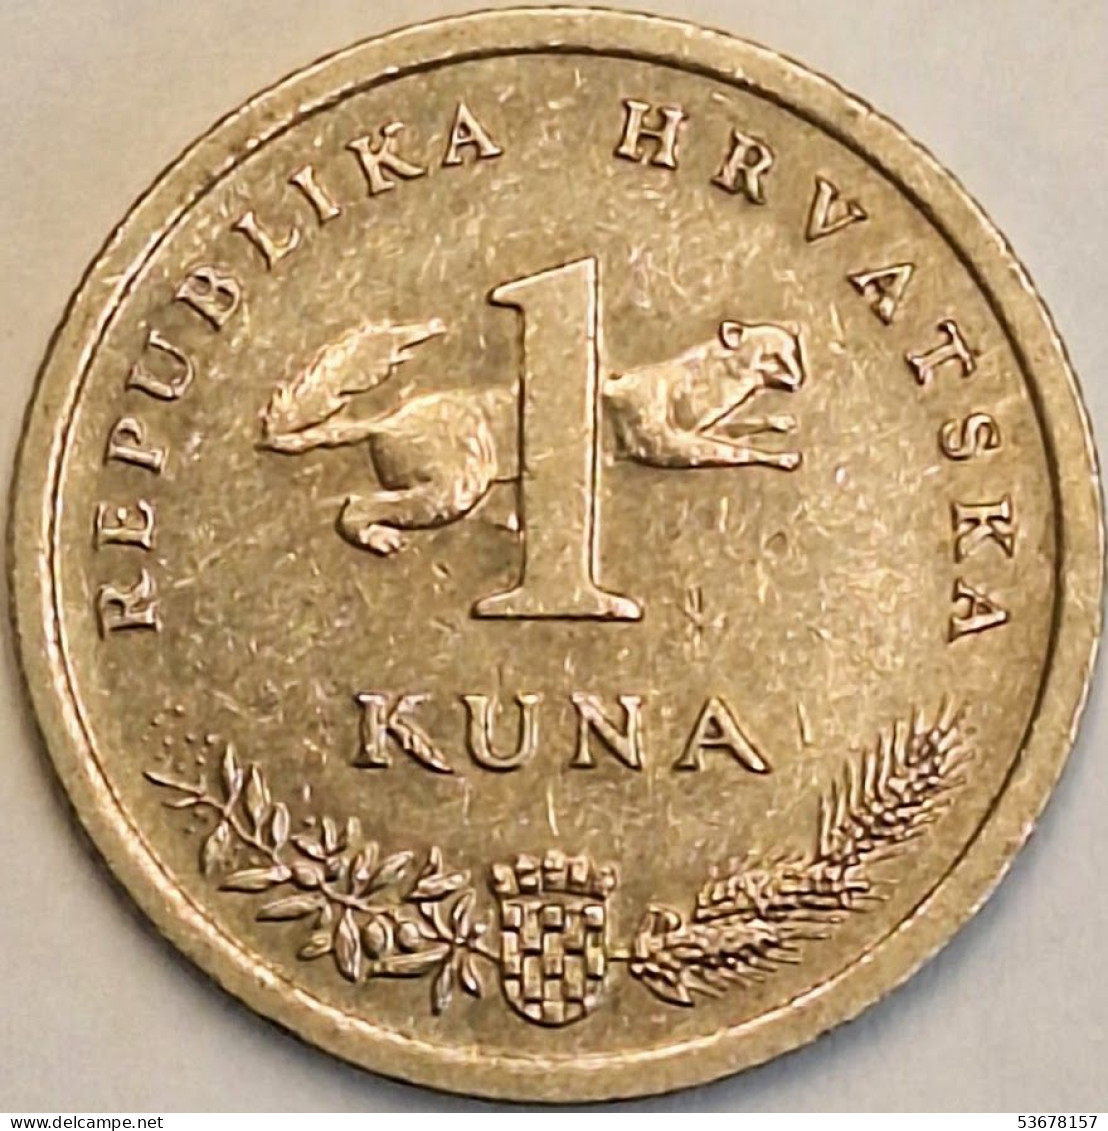 Croatia - Kuna 1993, KM# 9.1 (#3554) - Croatia